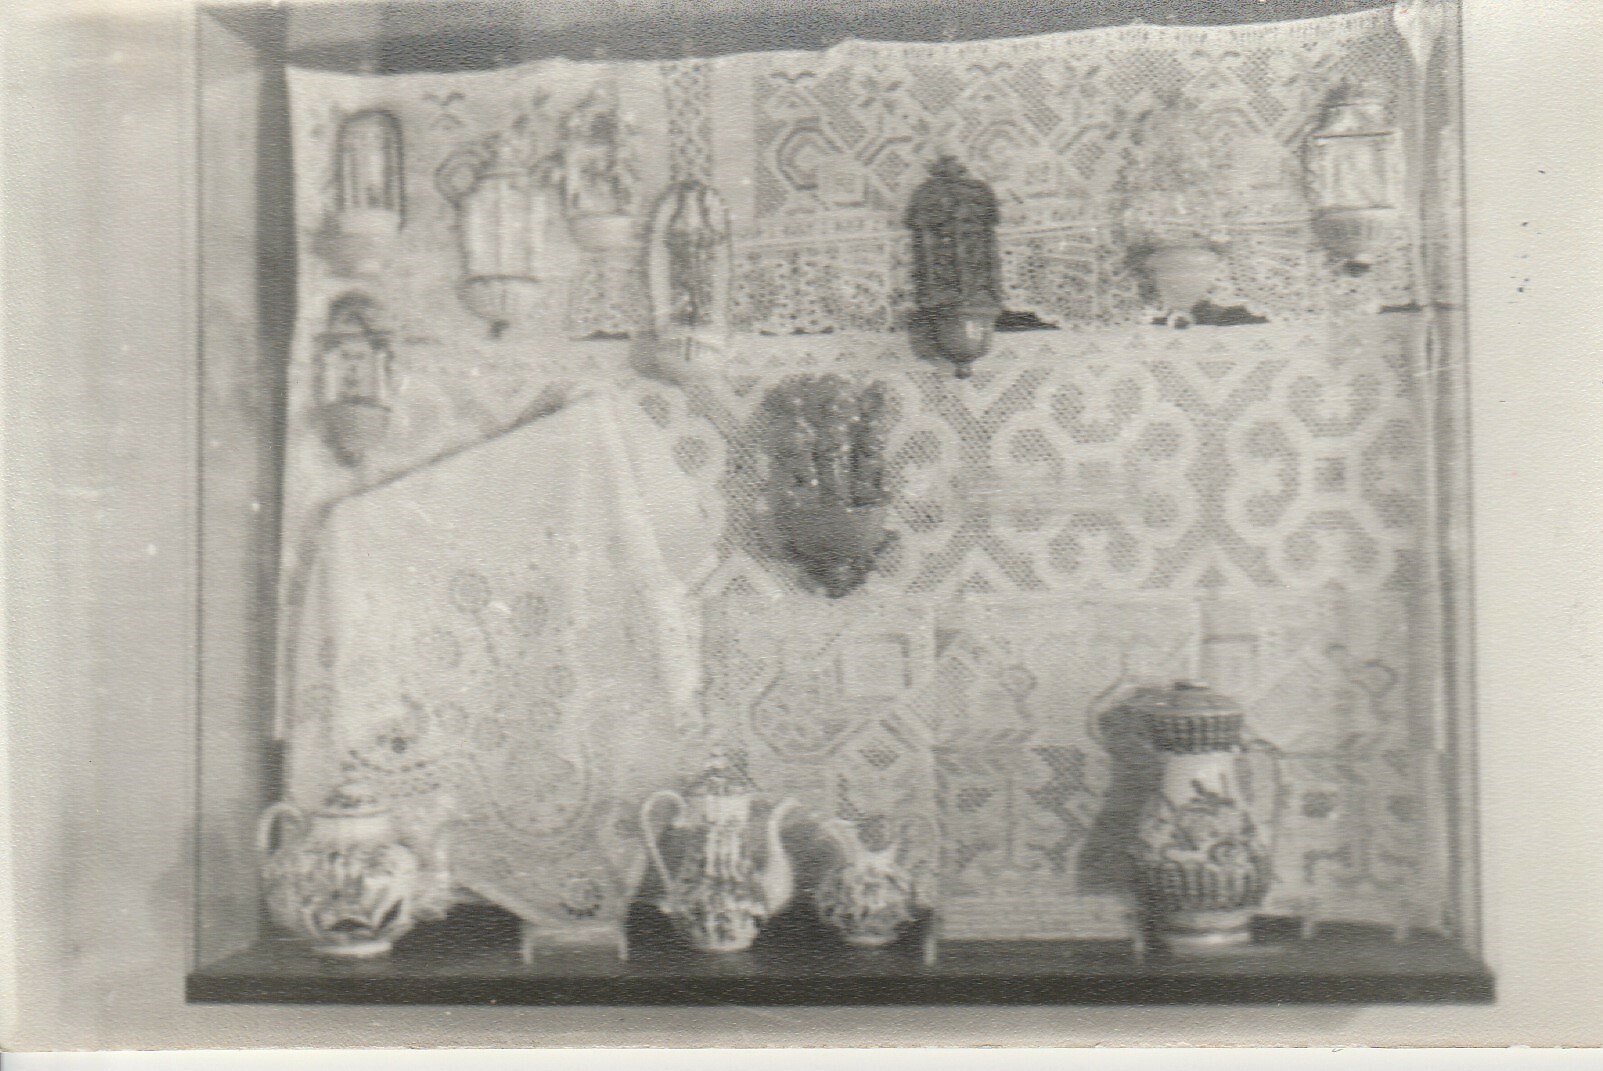 Tárló a sümegi Kisfaludy Emlékház kiállításán (Tapolcai Városi Múzeum CC BY-NC-SA)